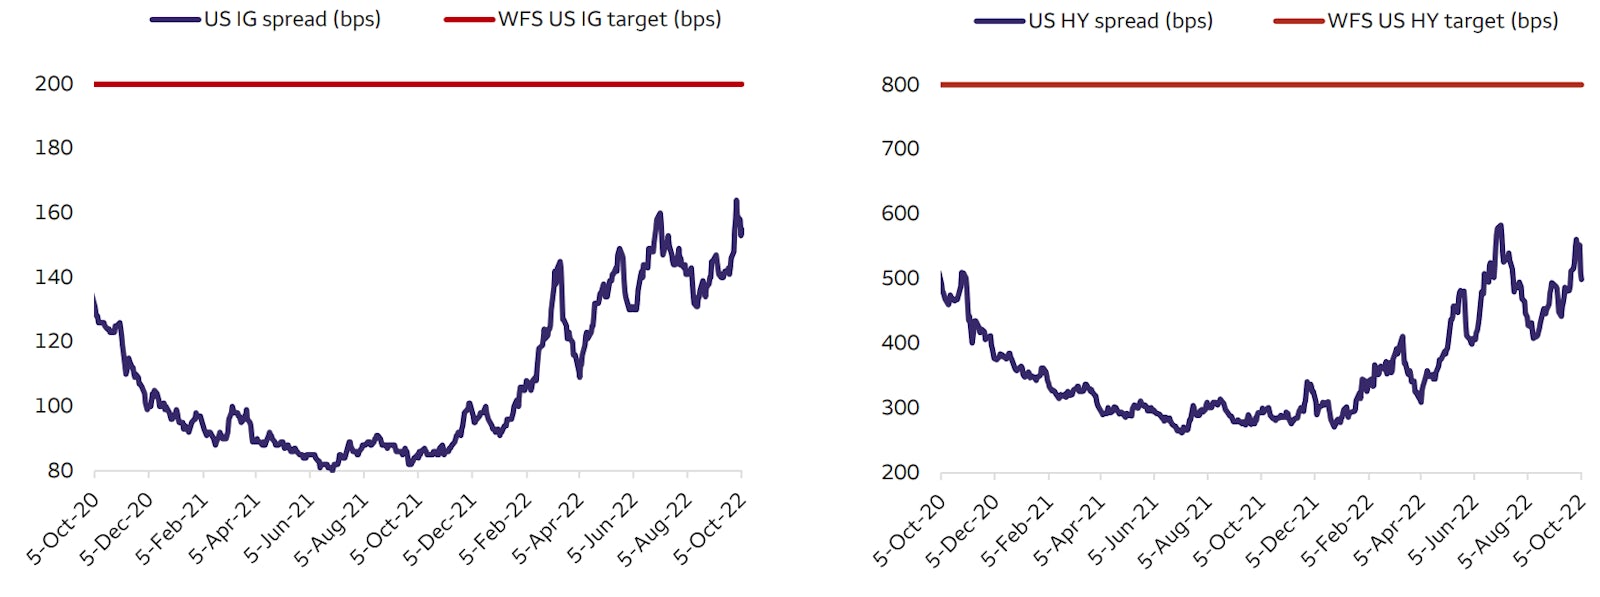 Target Spreads For USD Credit | Source: Wells Fargo Securities